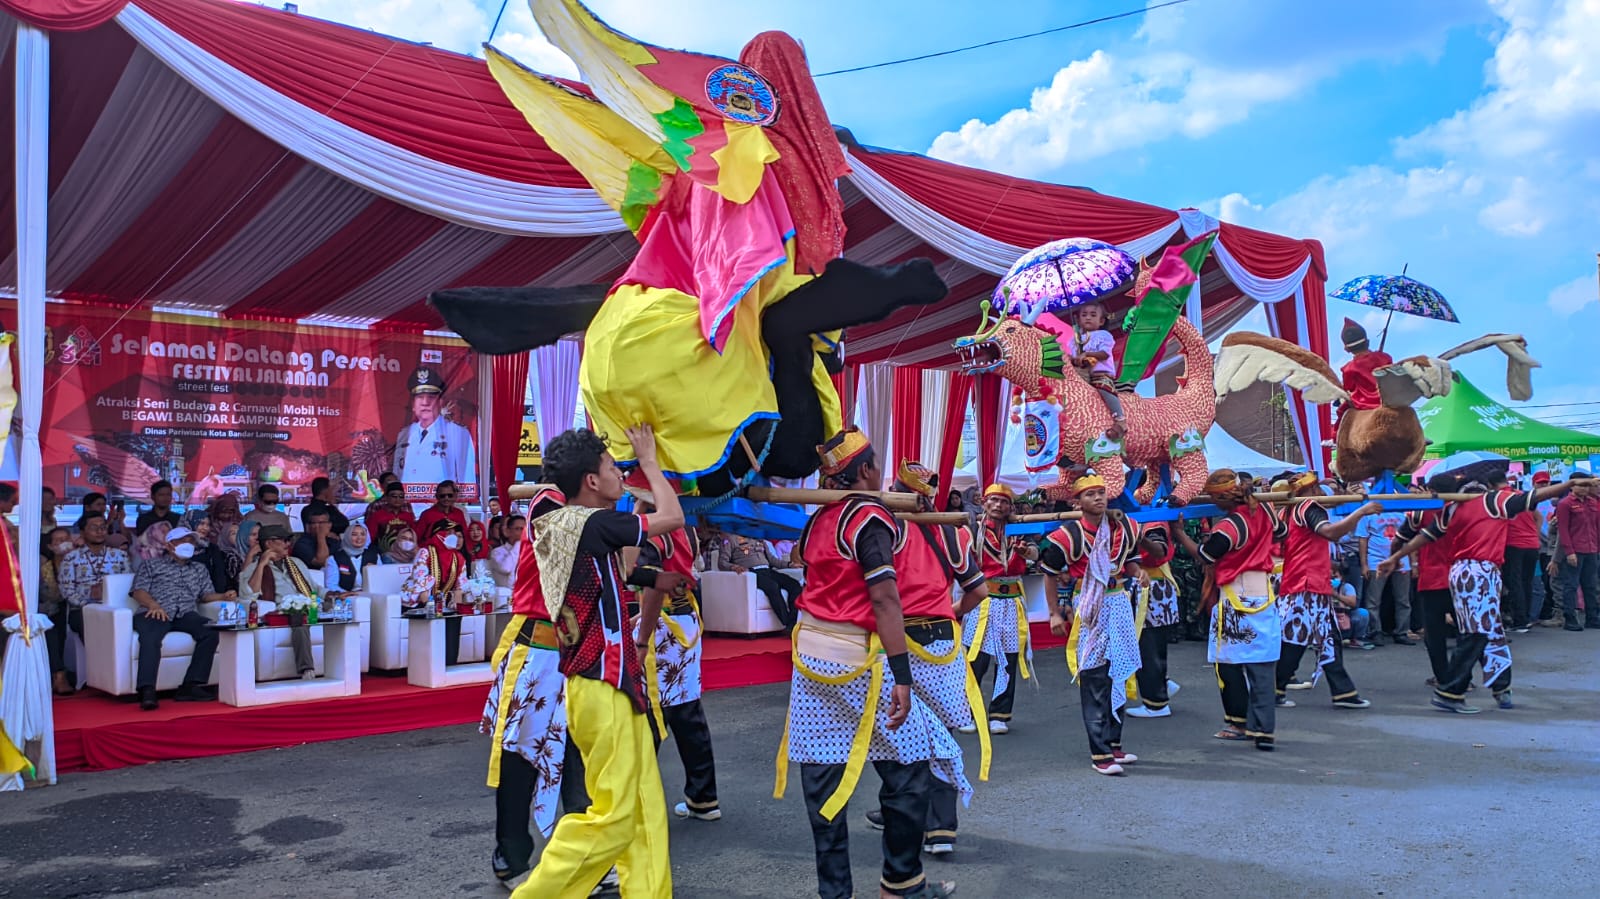 Ribuan warga Bandar Lampung antusias mengikuti Festival Mobil Hias dan Parade Budaya Nusantara dalam rangka HUT Kota Bandar Lampung ke-341